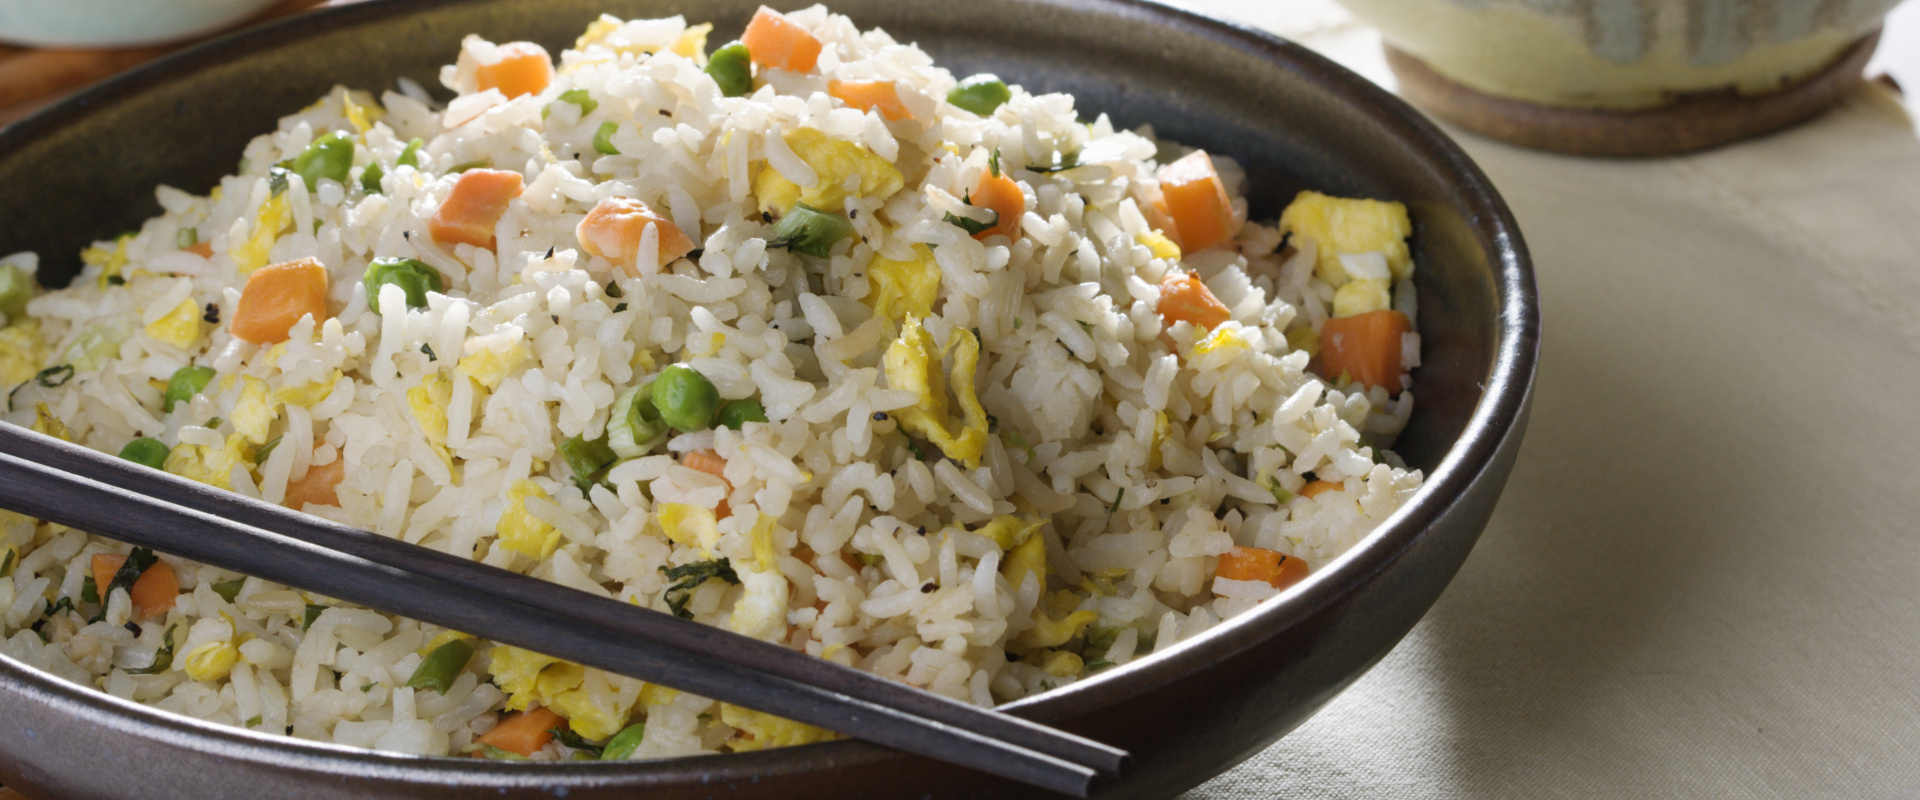 tojásos zöldséges süt rizs cover